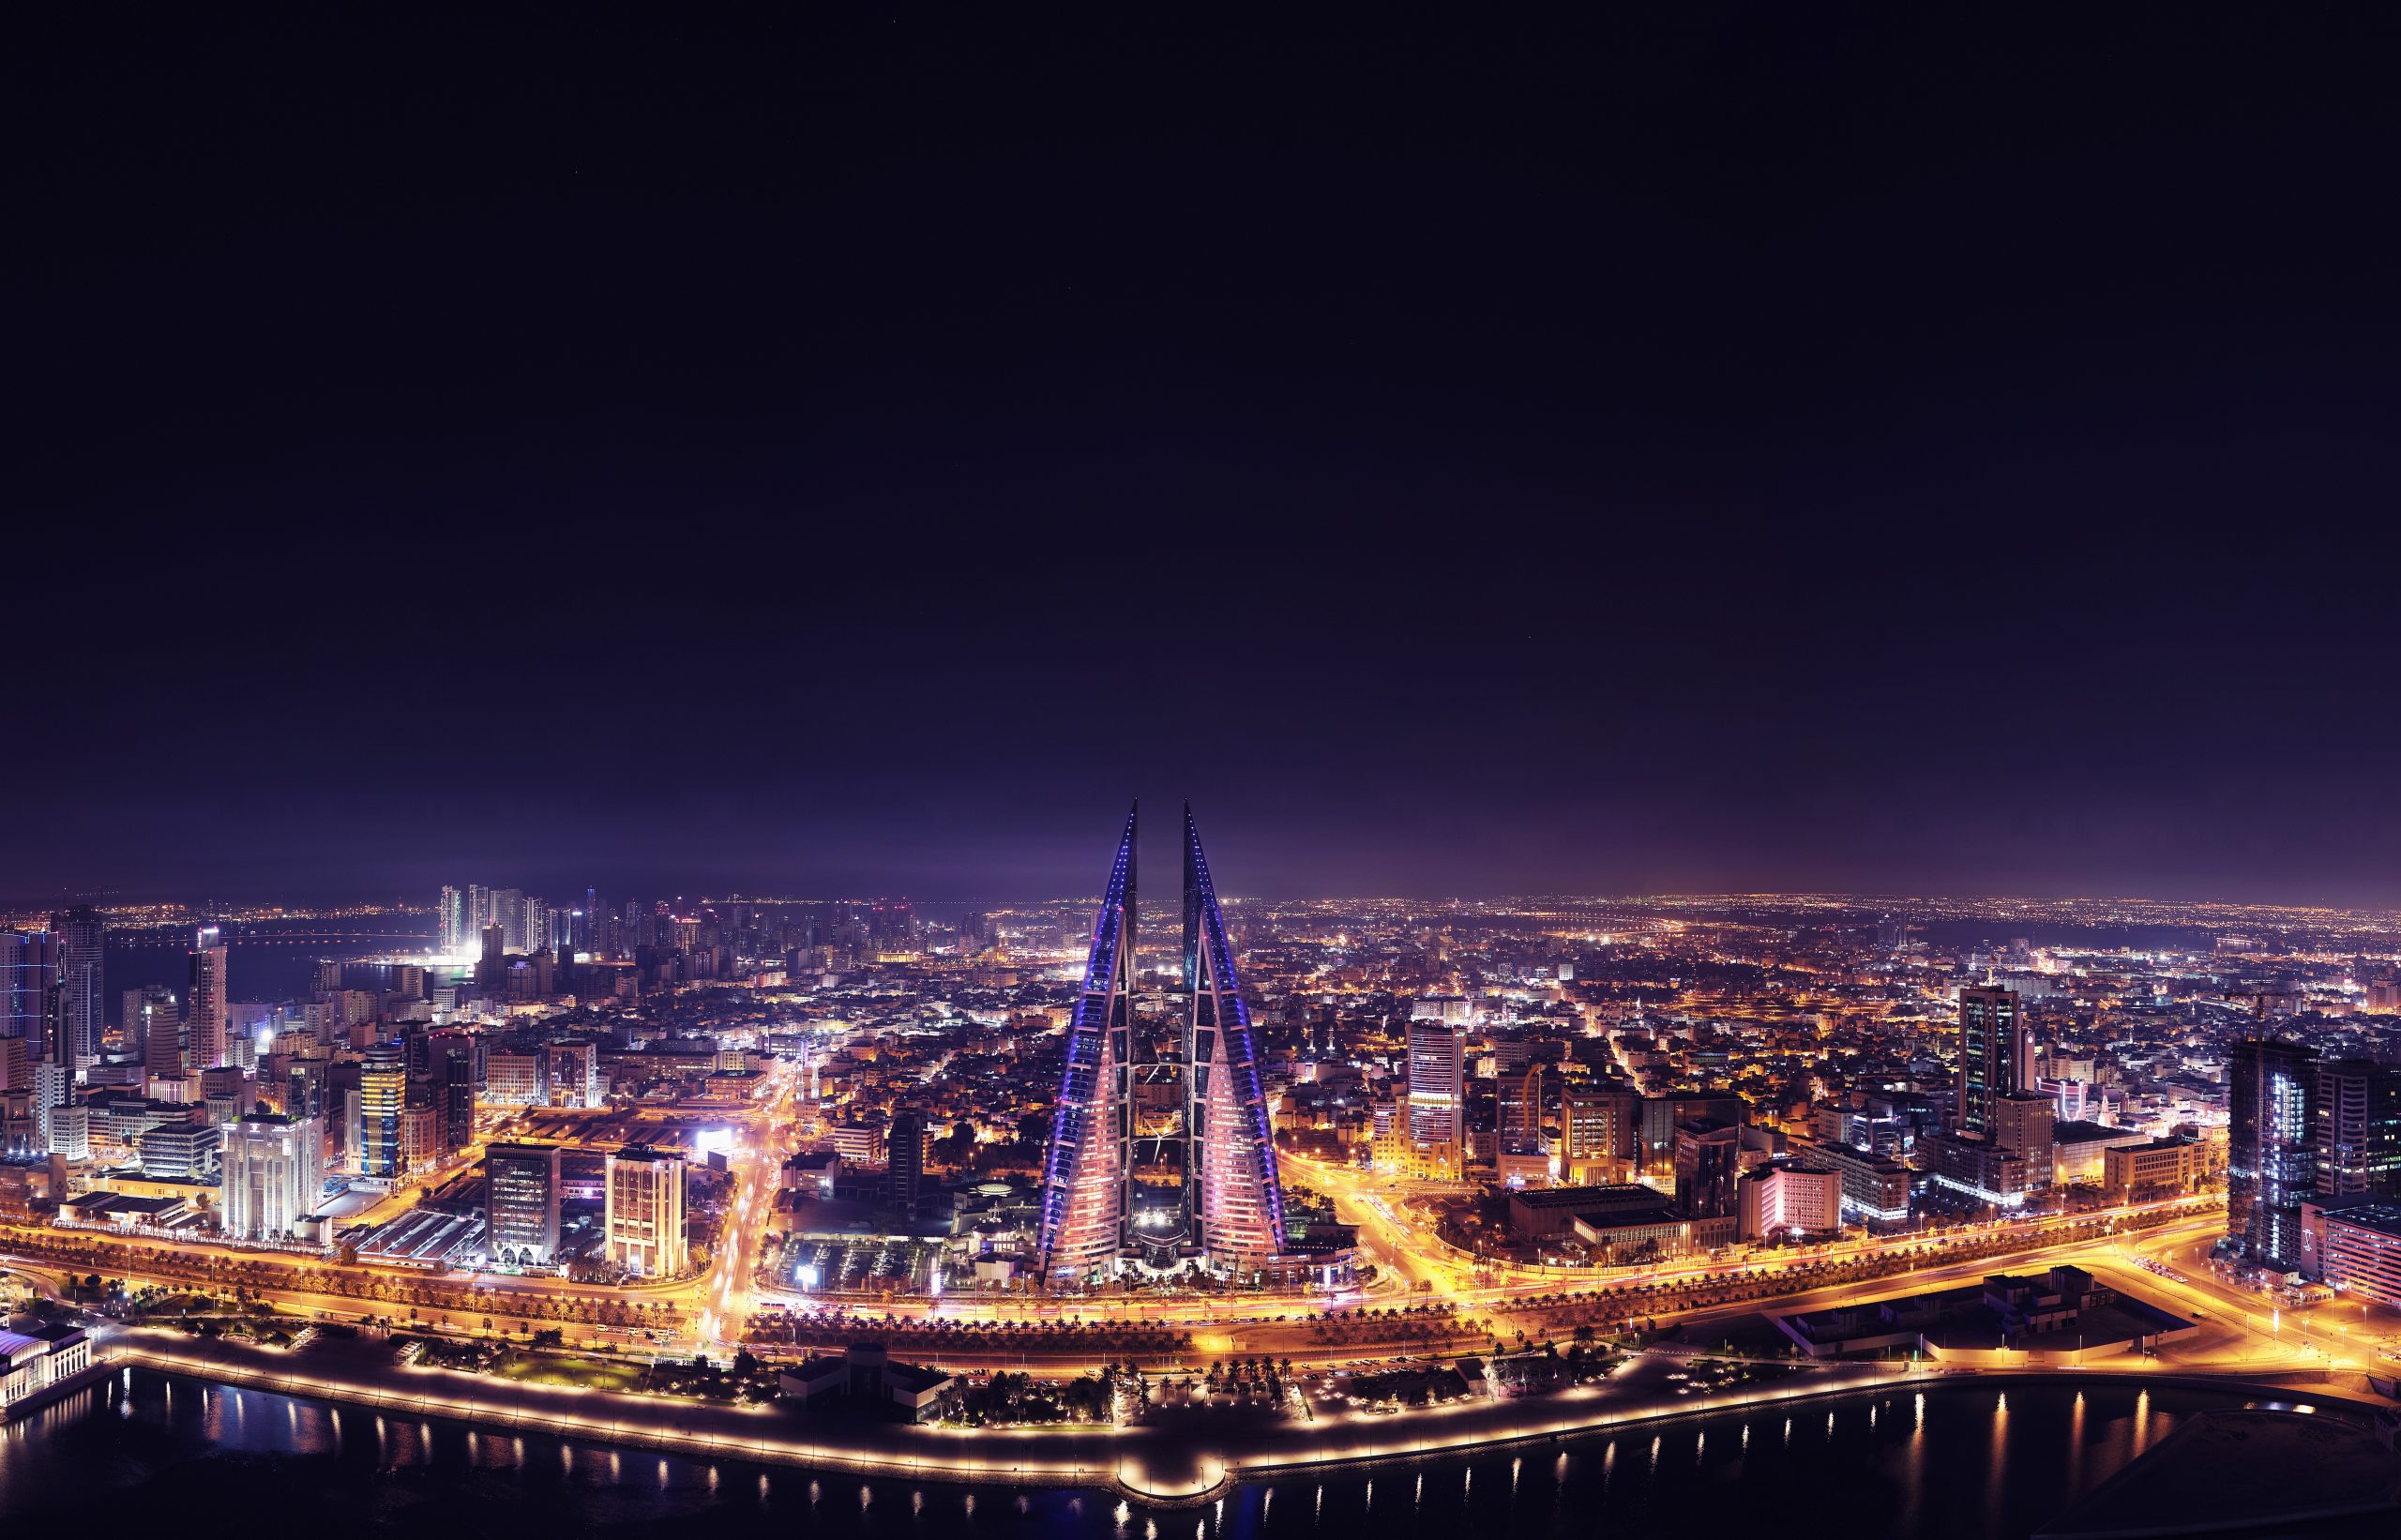 مملكة البحرين تعلن عن إطلاق الرخصة الذهبية للمشاريع الاستراتيجية بما يعزز من تنافسيتها كوجهة ملائمة للاستثمار 